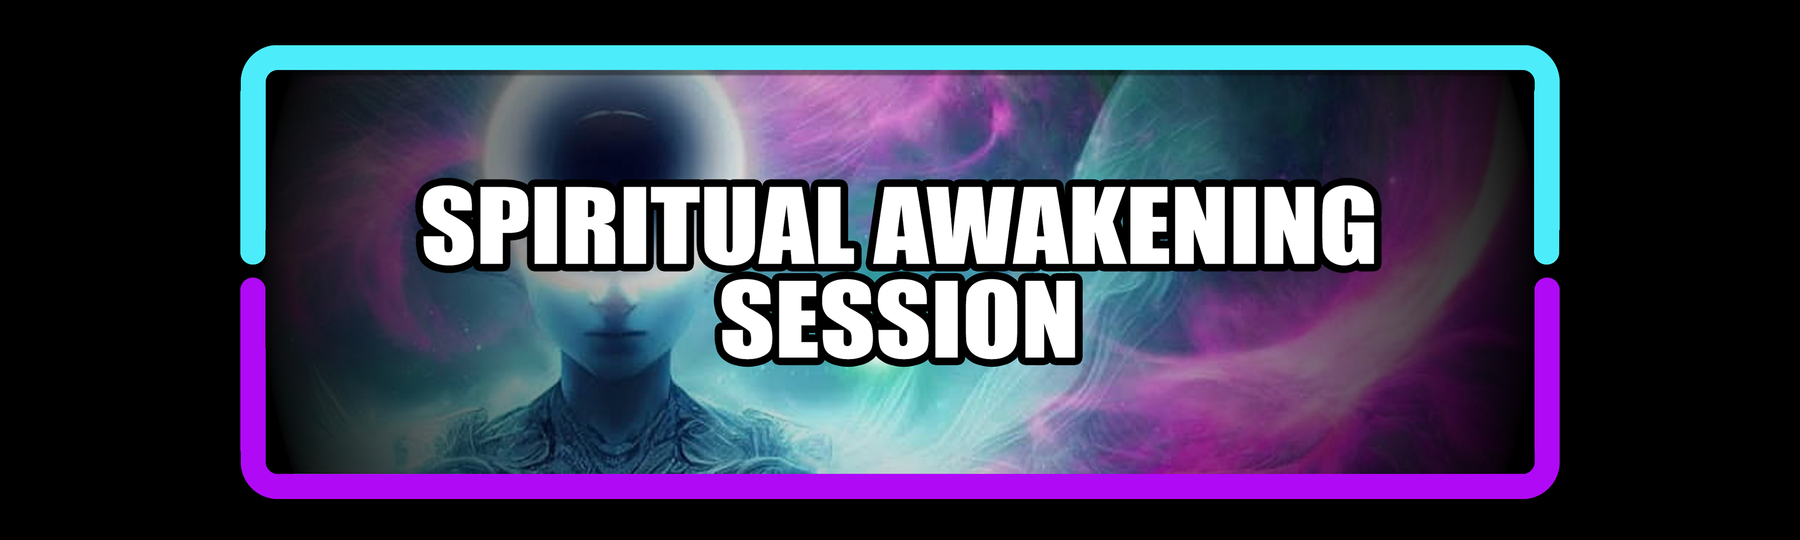 Spiritual Awakening Session